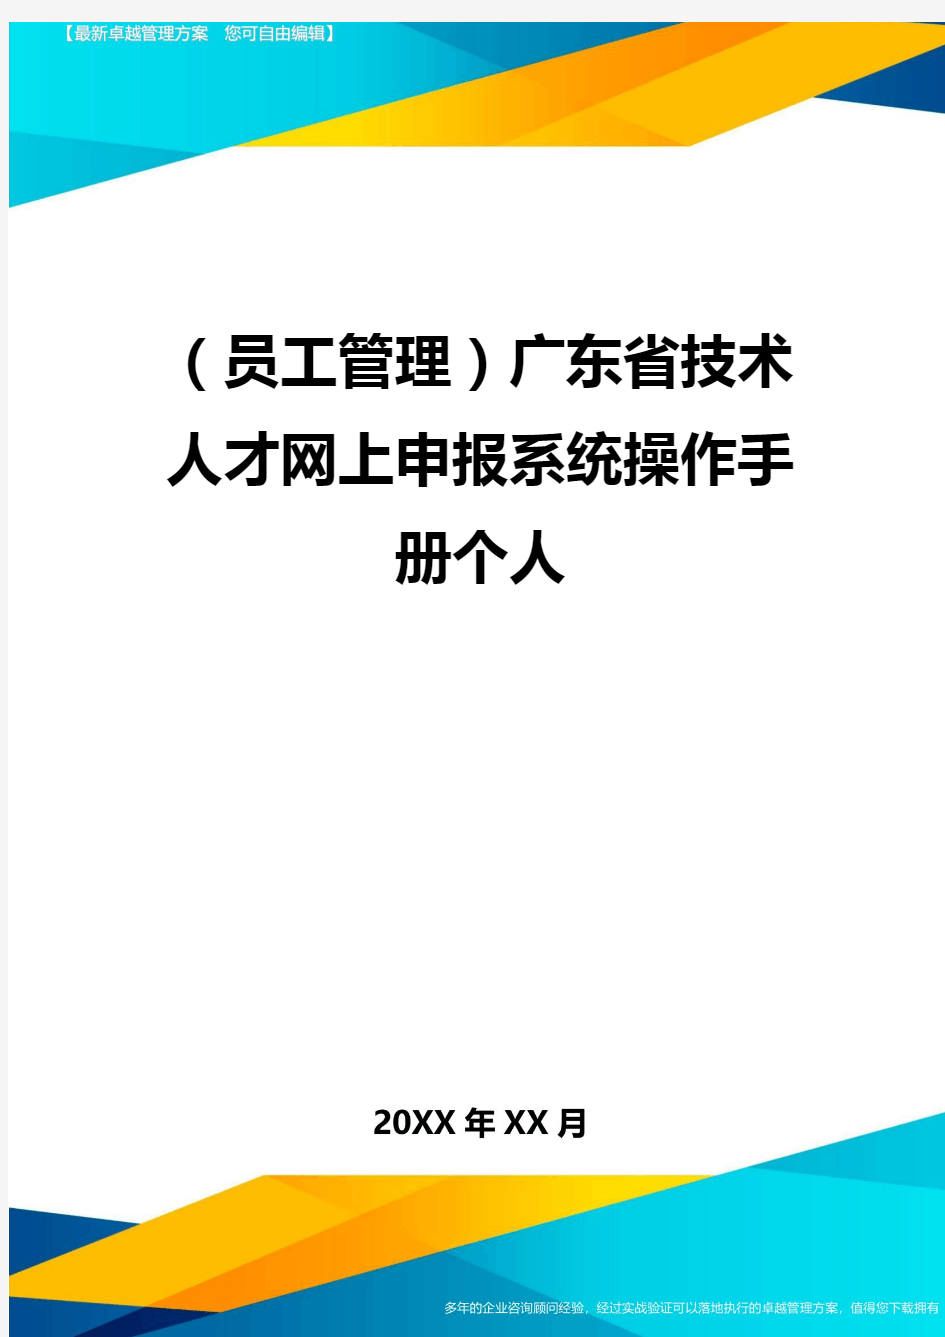 员工管理广东省技术人才网上申报系统操作手册个人